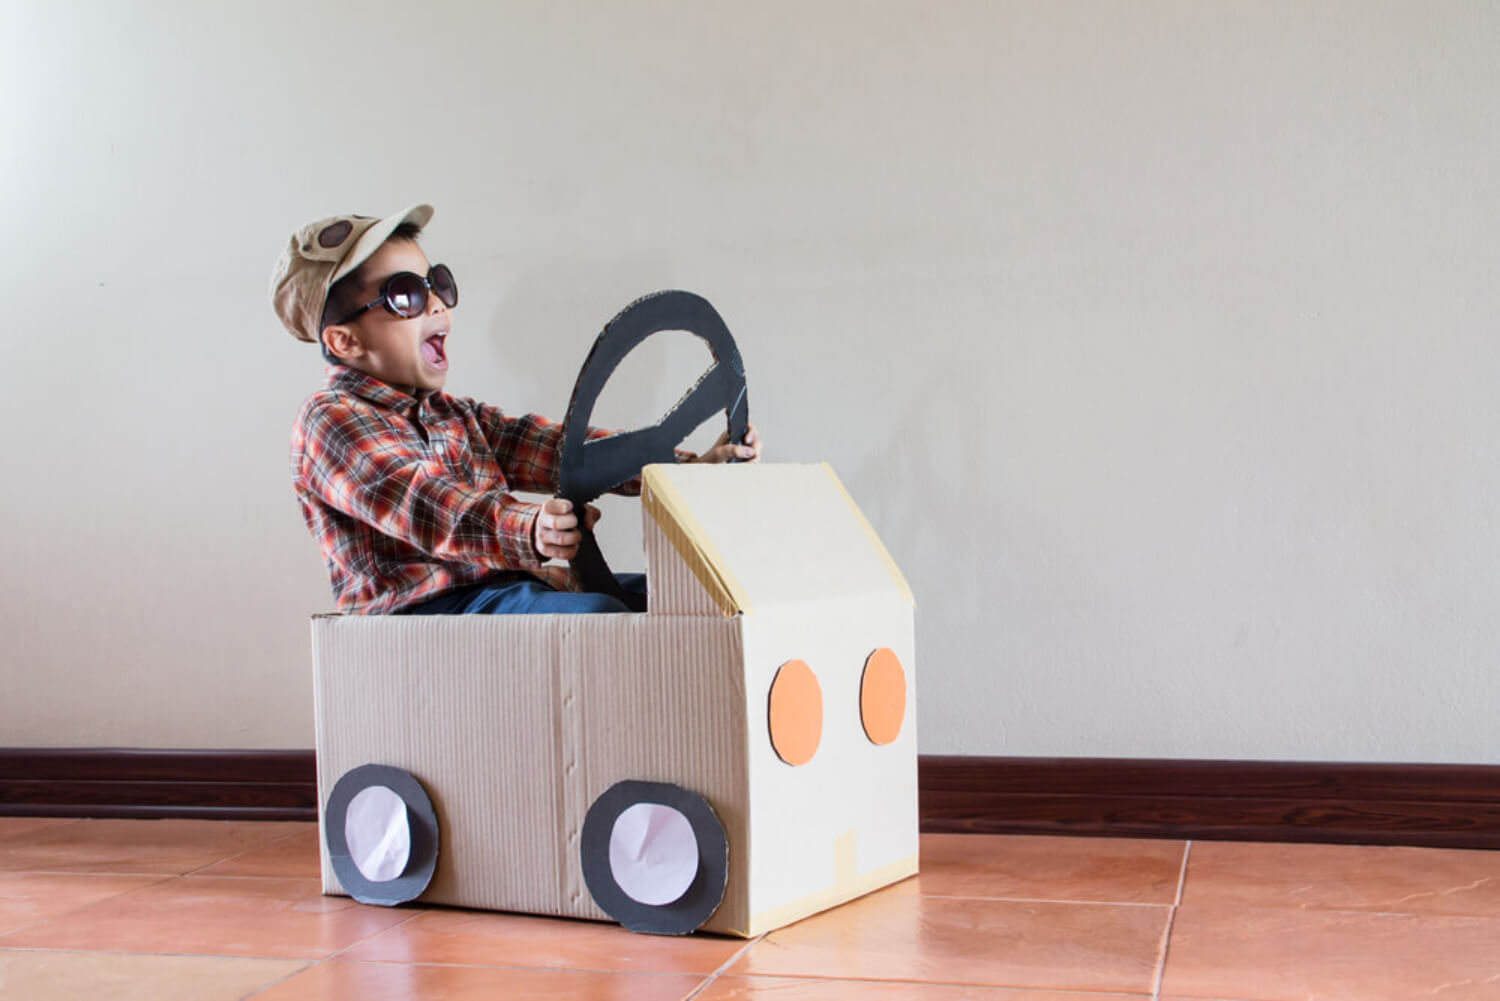 Niño jugando con un coche de cartón, una de las formas de entretener durante horas a los niños.